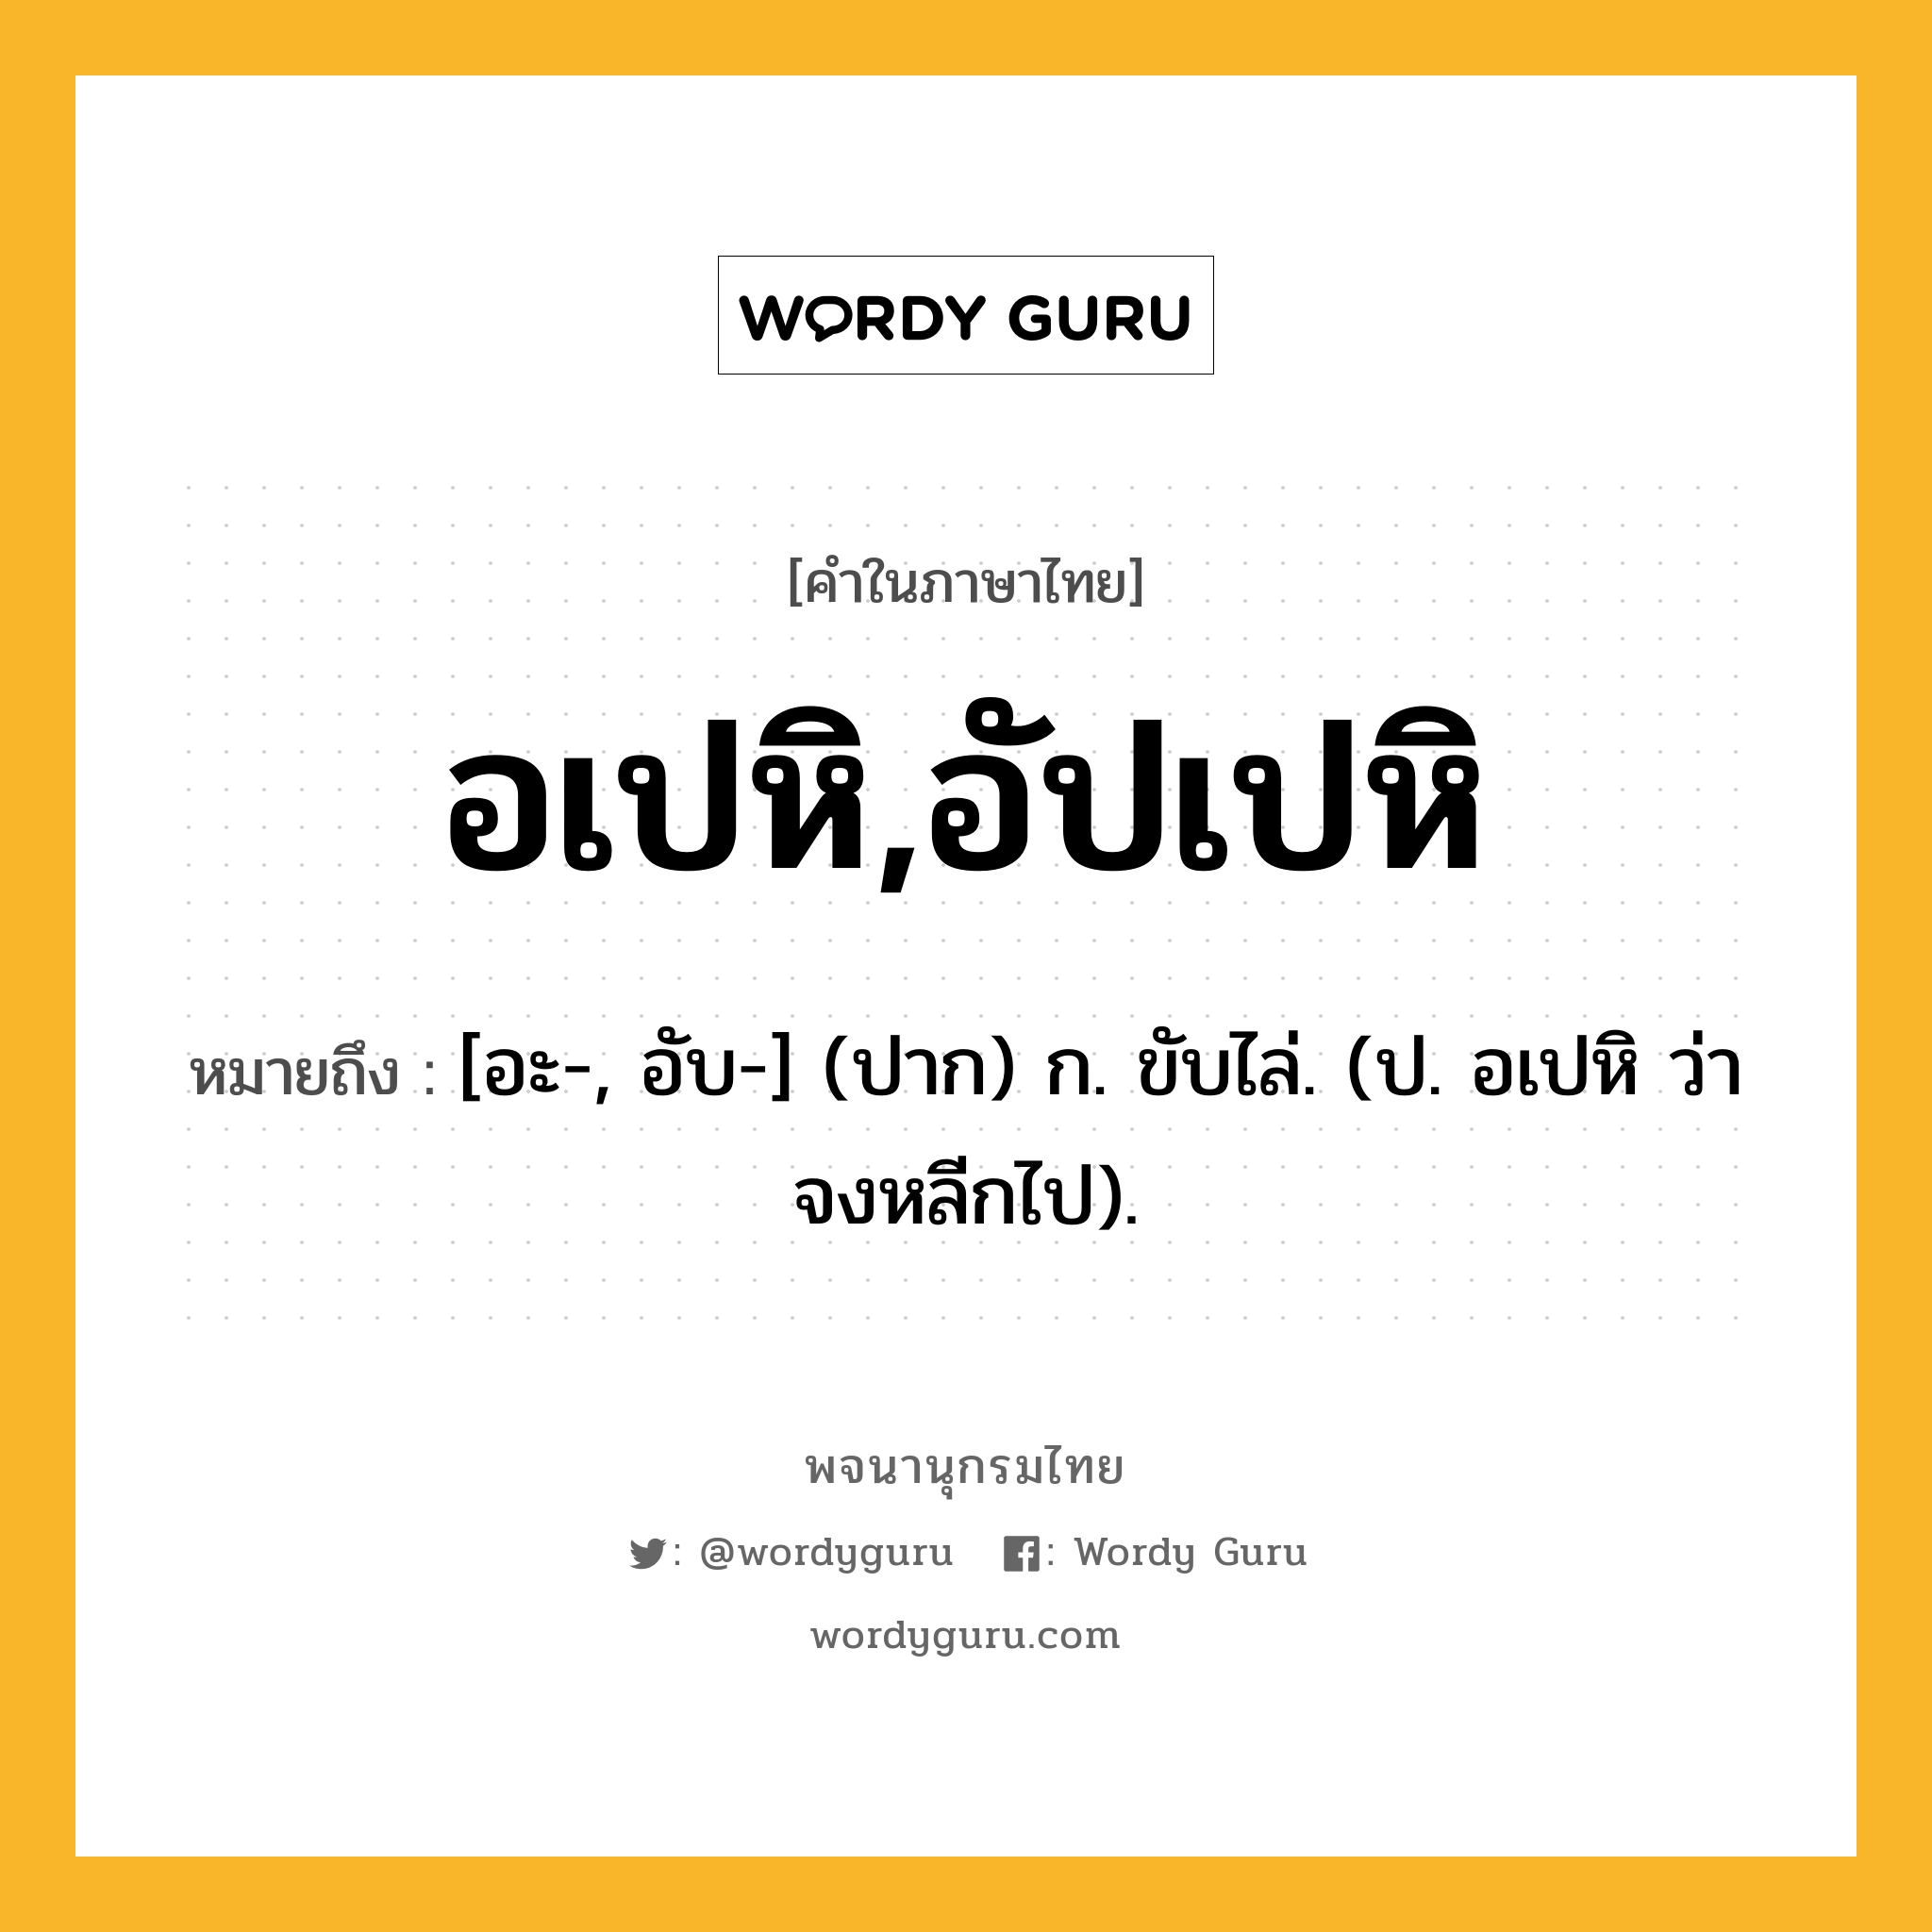 อเปหิ,อัปเปหิ หมายถึงอะไร?, คำในภาษาไทย อเปหิ,อัปเปหิ หมายถึง [อะ-, อับ-] (ปาก) ก. ขับไล่. (ป. อเปหิ ว่า จงหลีกไป).